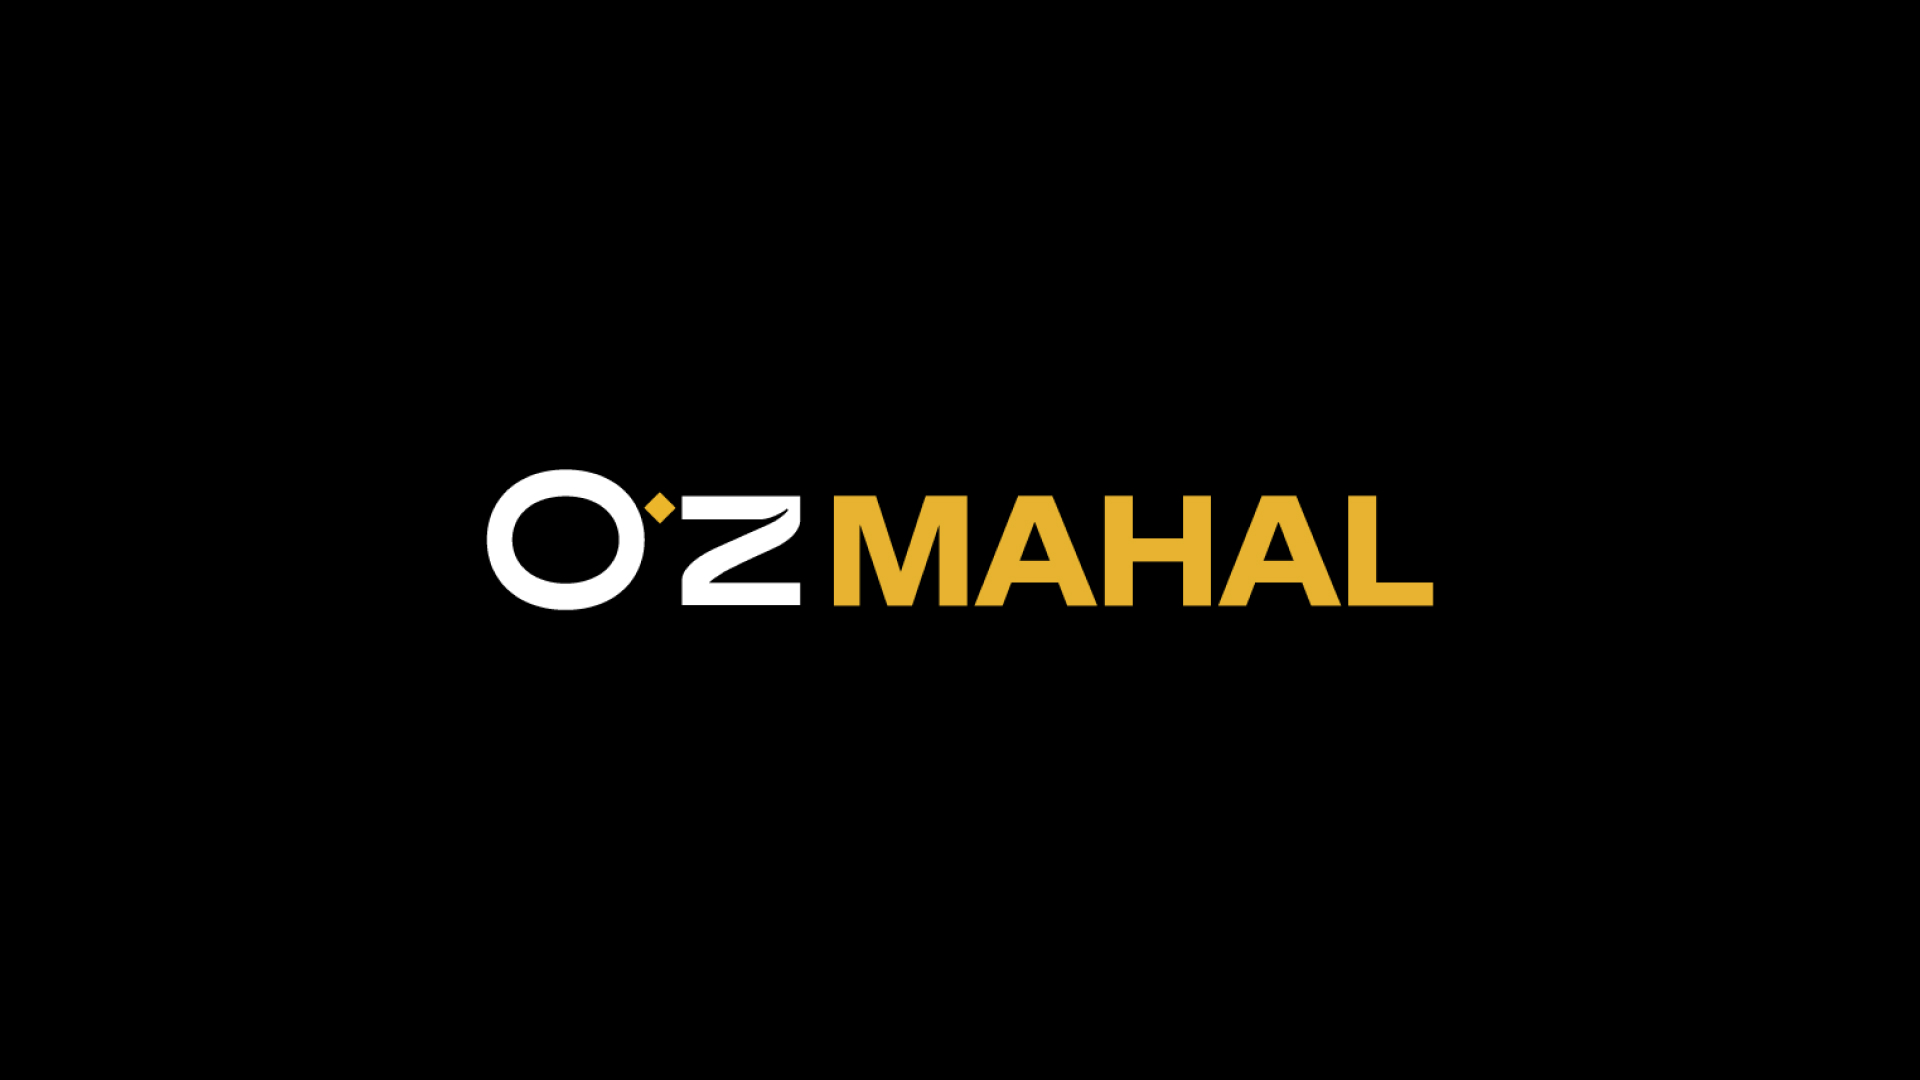 O'Z MAHAL